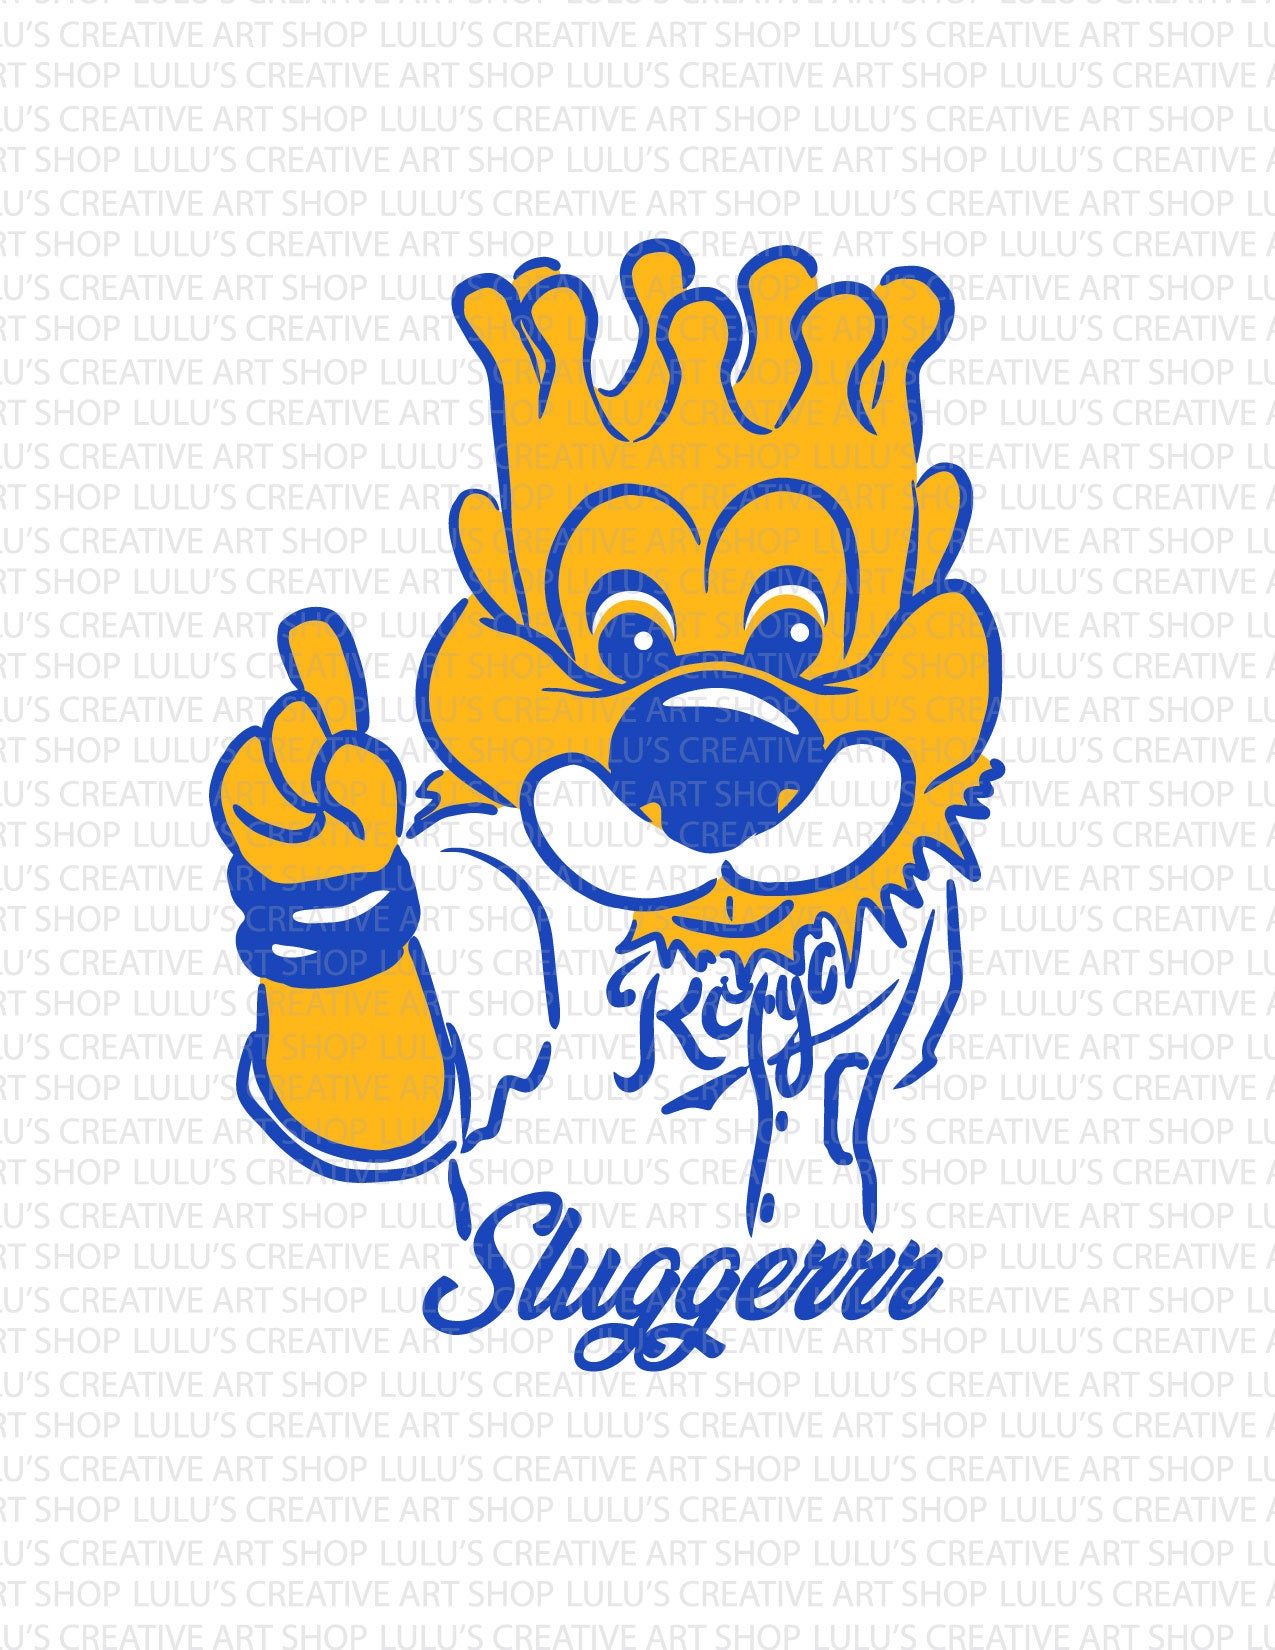 KC Crown SVG, Kansas City Royals Logo SVG, Kansas City